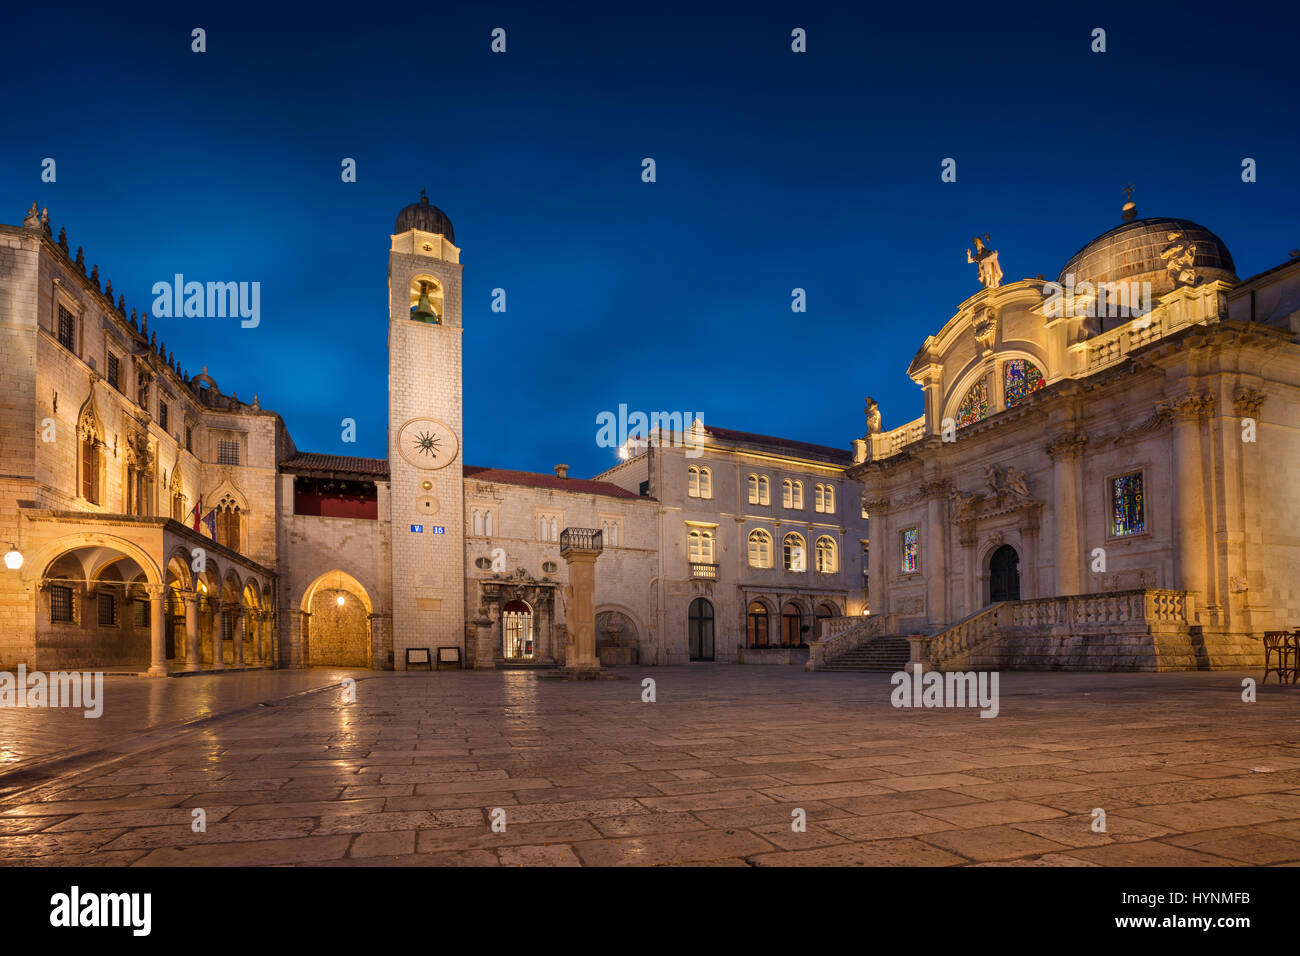 Dubrovnik. Belles rues romantiques de la vieille ville de Dubrovnik pendant le crépuscule heure bleue. Banque D'Images